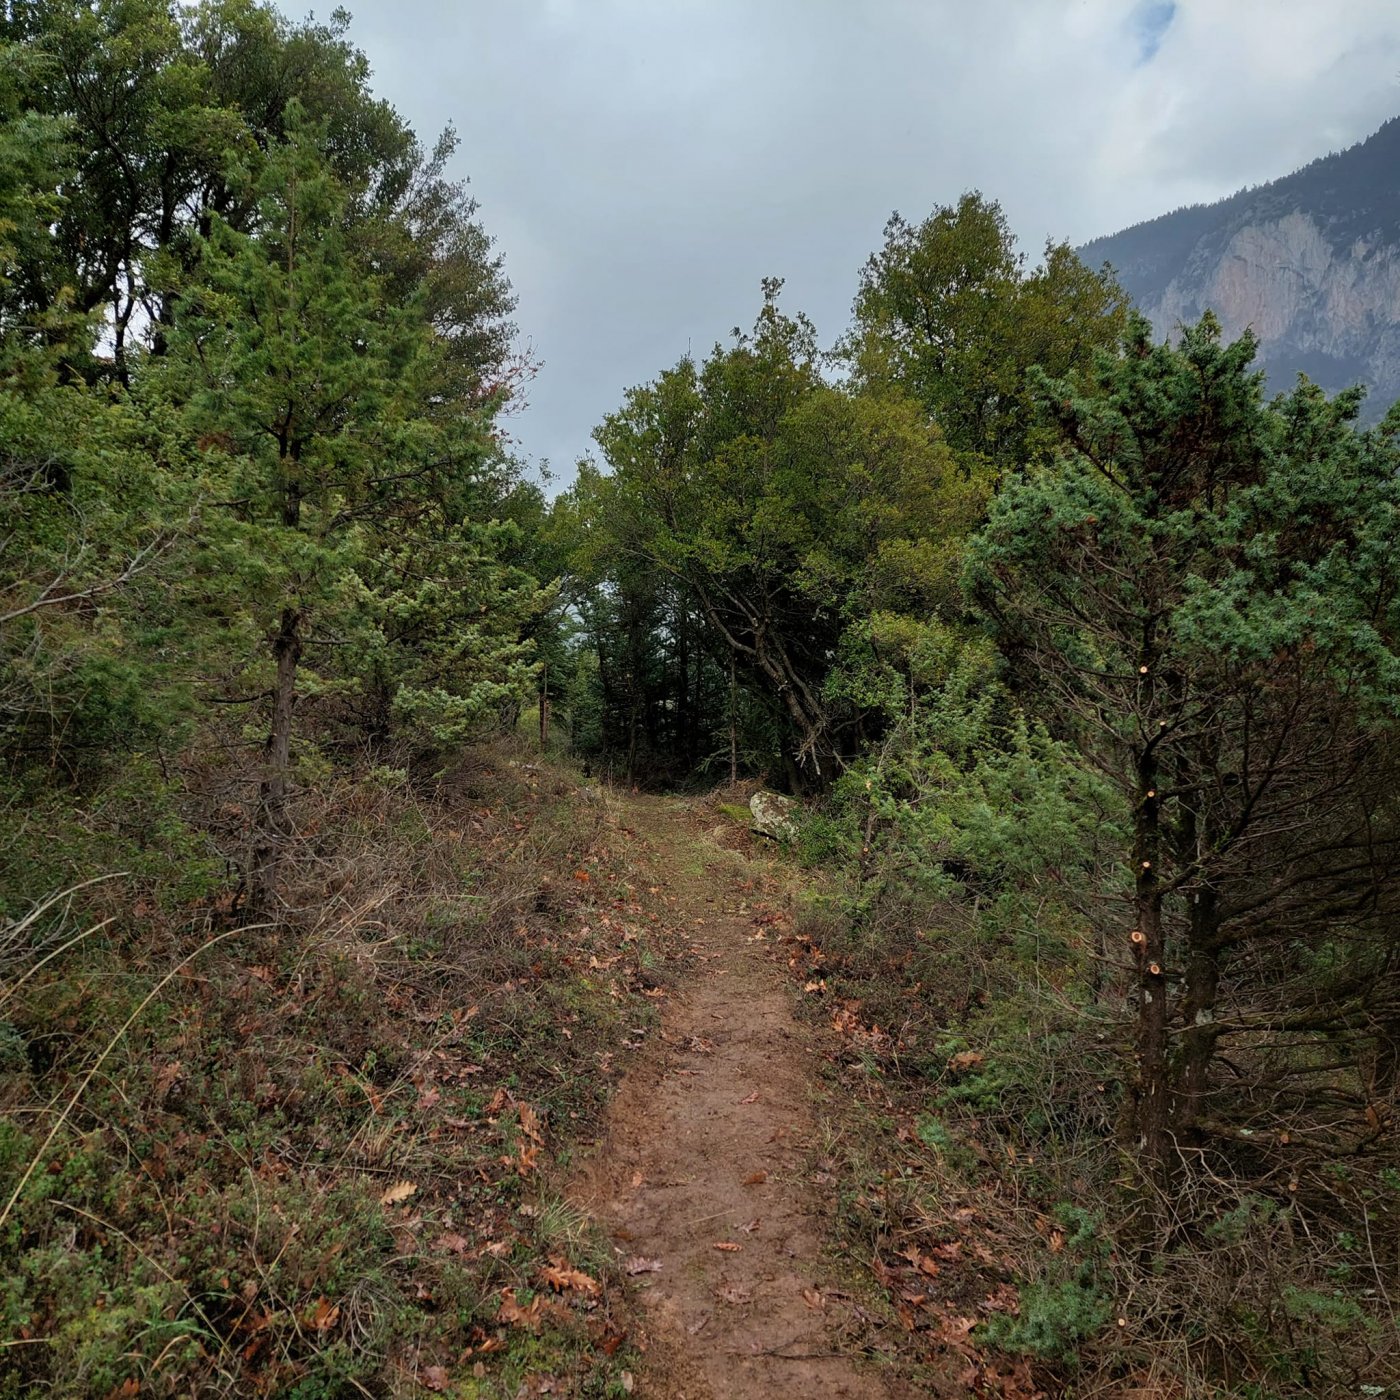 Ολοκληρώνεται το σκέλος του Pindus Trail > Συκιά - Μουσουνίτσα - Αθ. Διάκος.